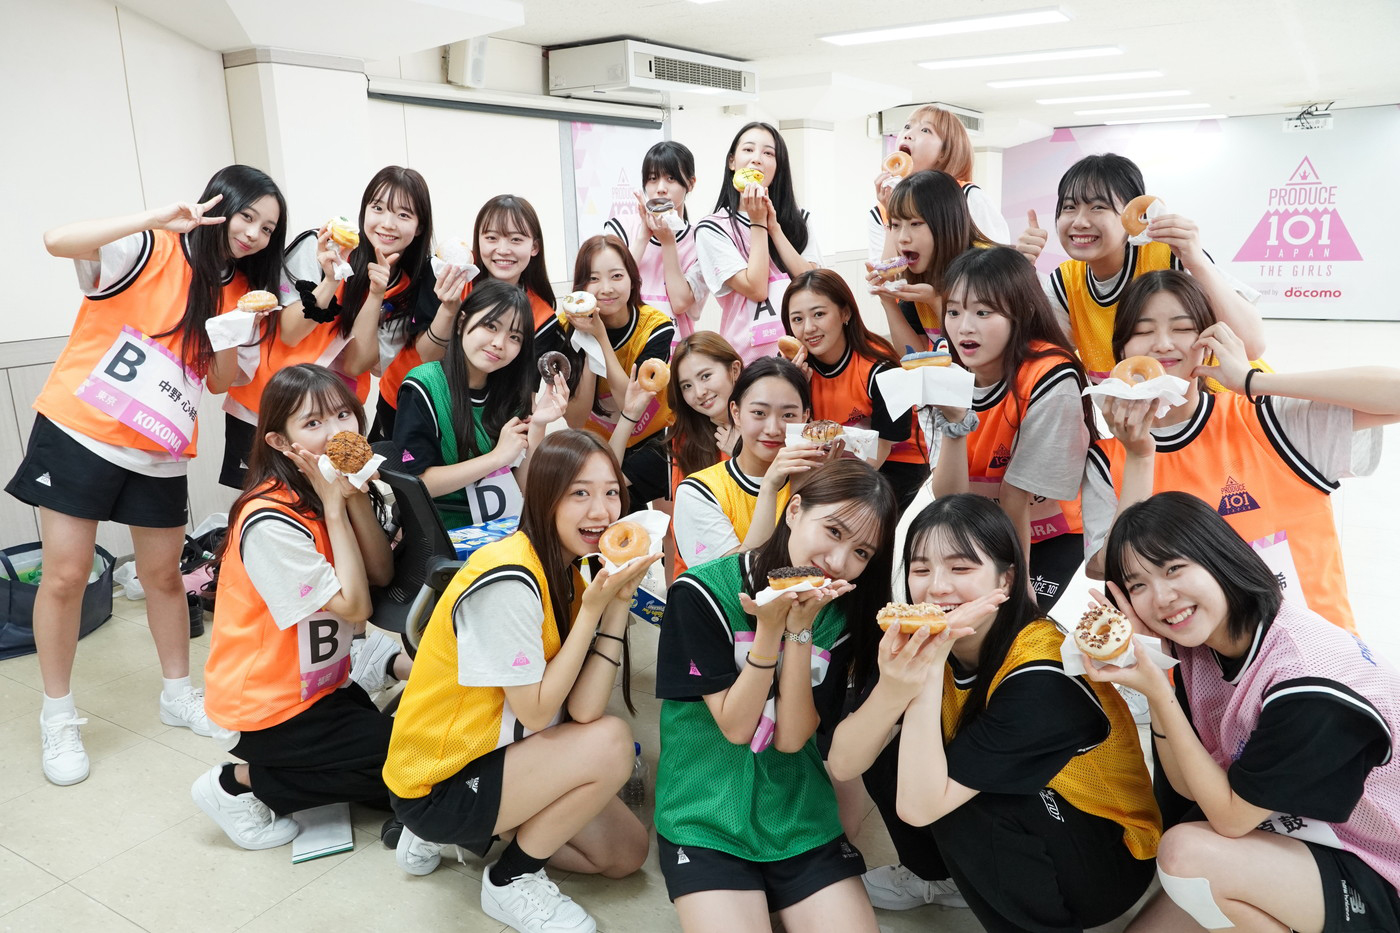 『PRODUCE 101 JAPAN THE GIRLS』公式ファンブック発売決定！番組では観られない練習生たちの貴重なオフショットが満載 - 画像一覧（9/9）